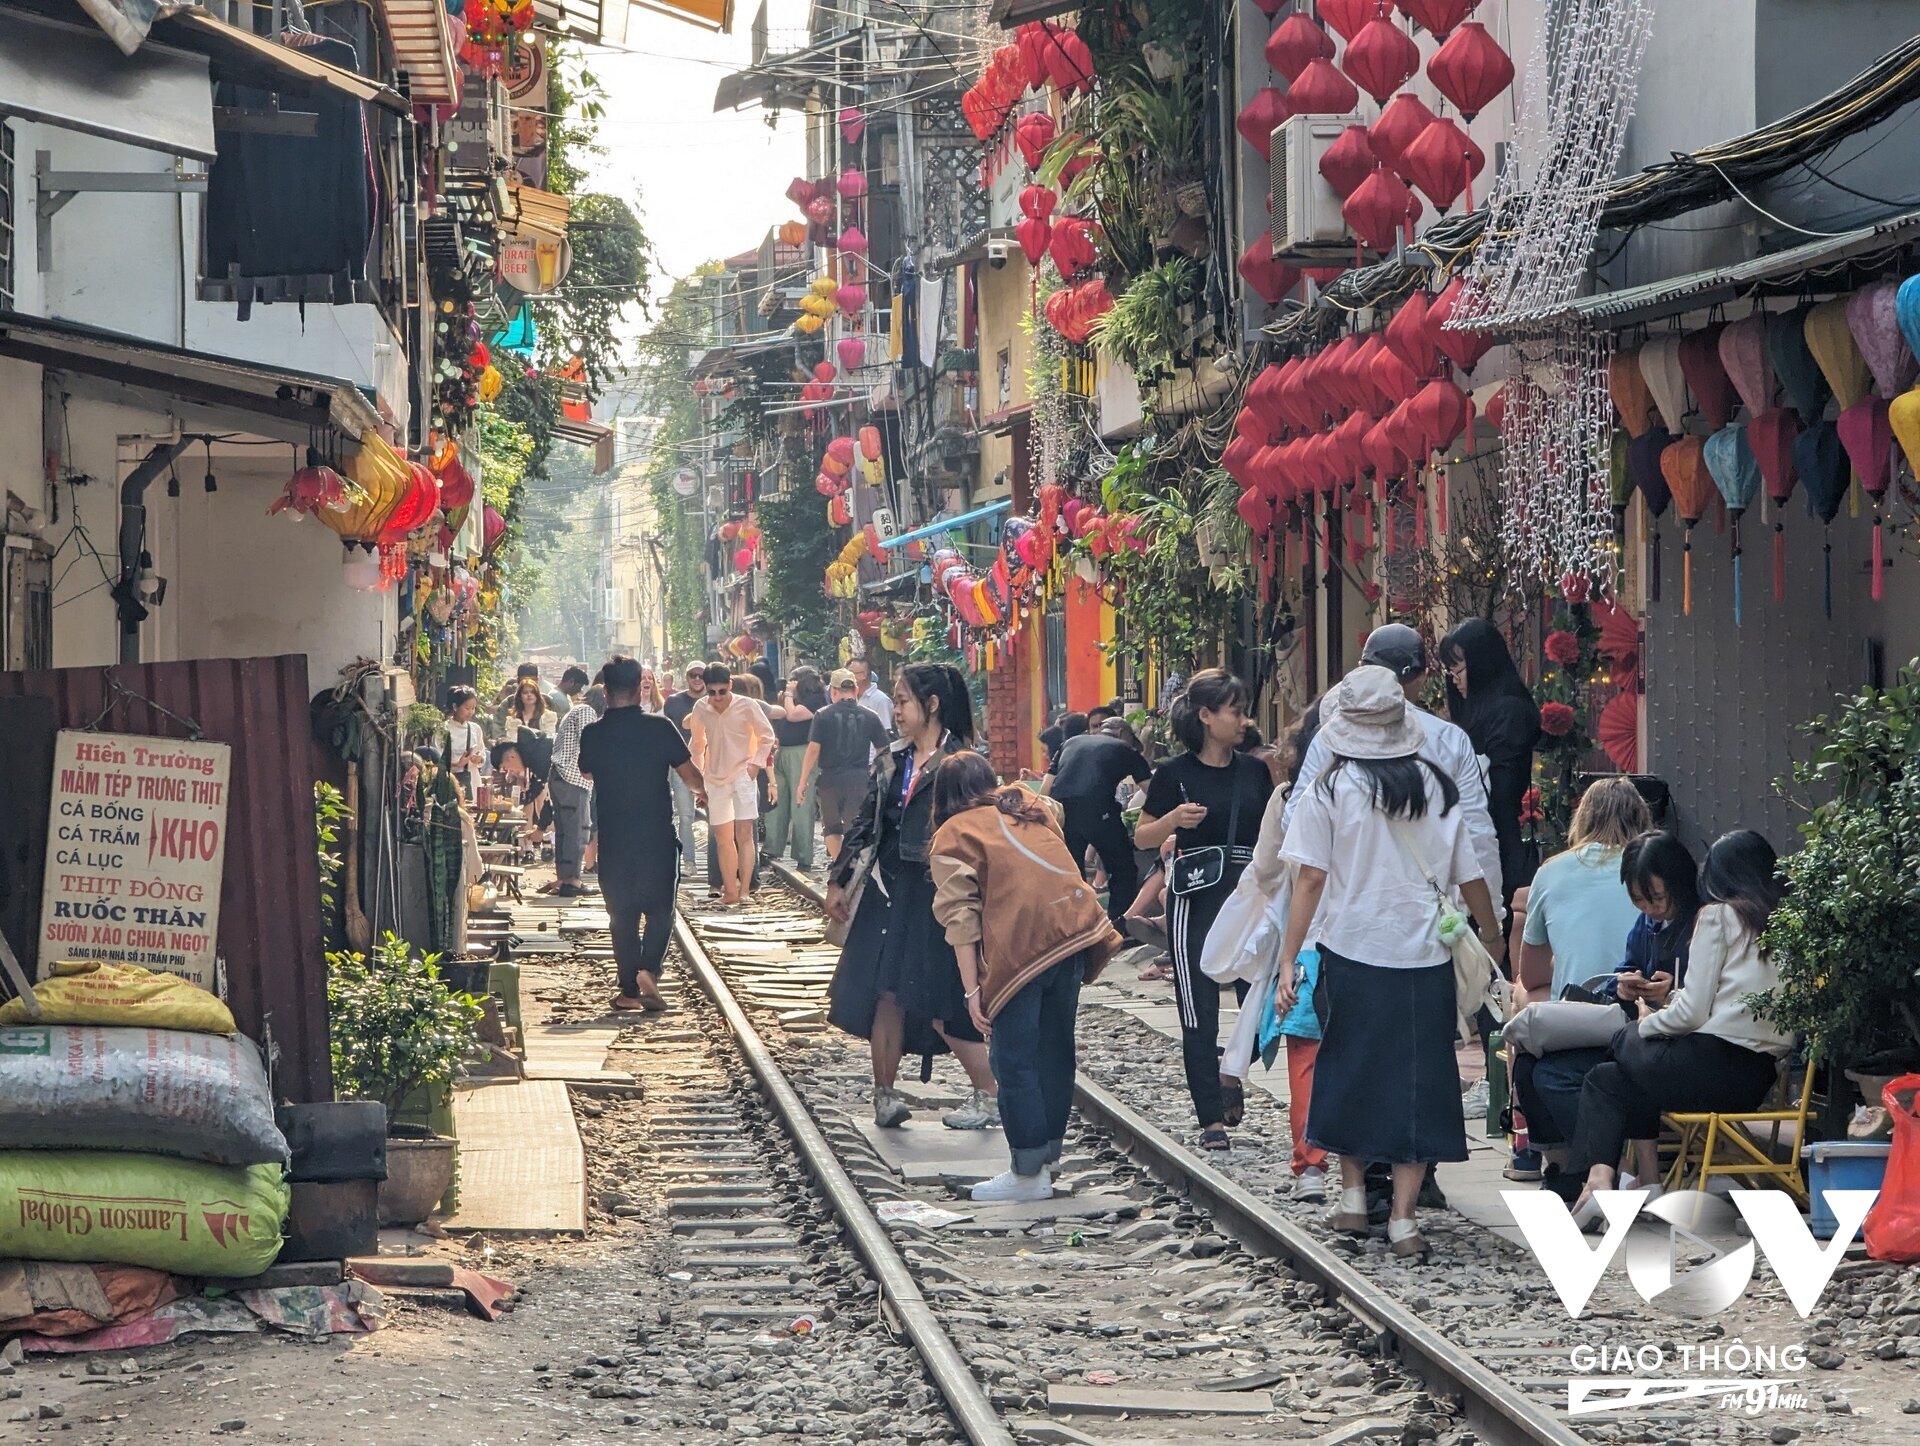 Ghi nhận của PV Kênh VOV Giao thông vào chiều ngày 13/2 (tức mồng 4 Tết), đoạn đường sắt từ phố Trần Phú đến Điện Biên Phủ tấp nập người dân và du khách đến uống cafe và chụp ảnh.